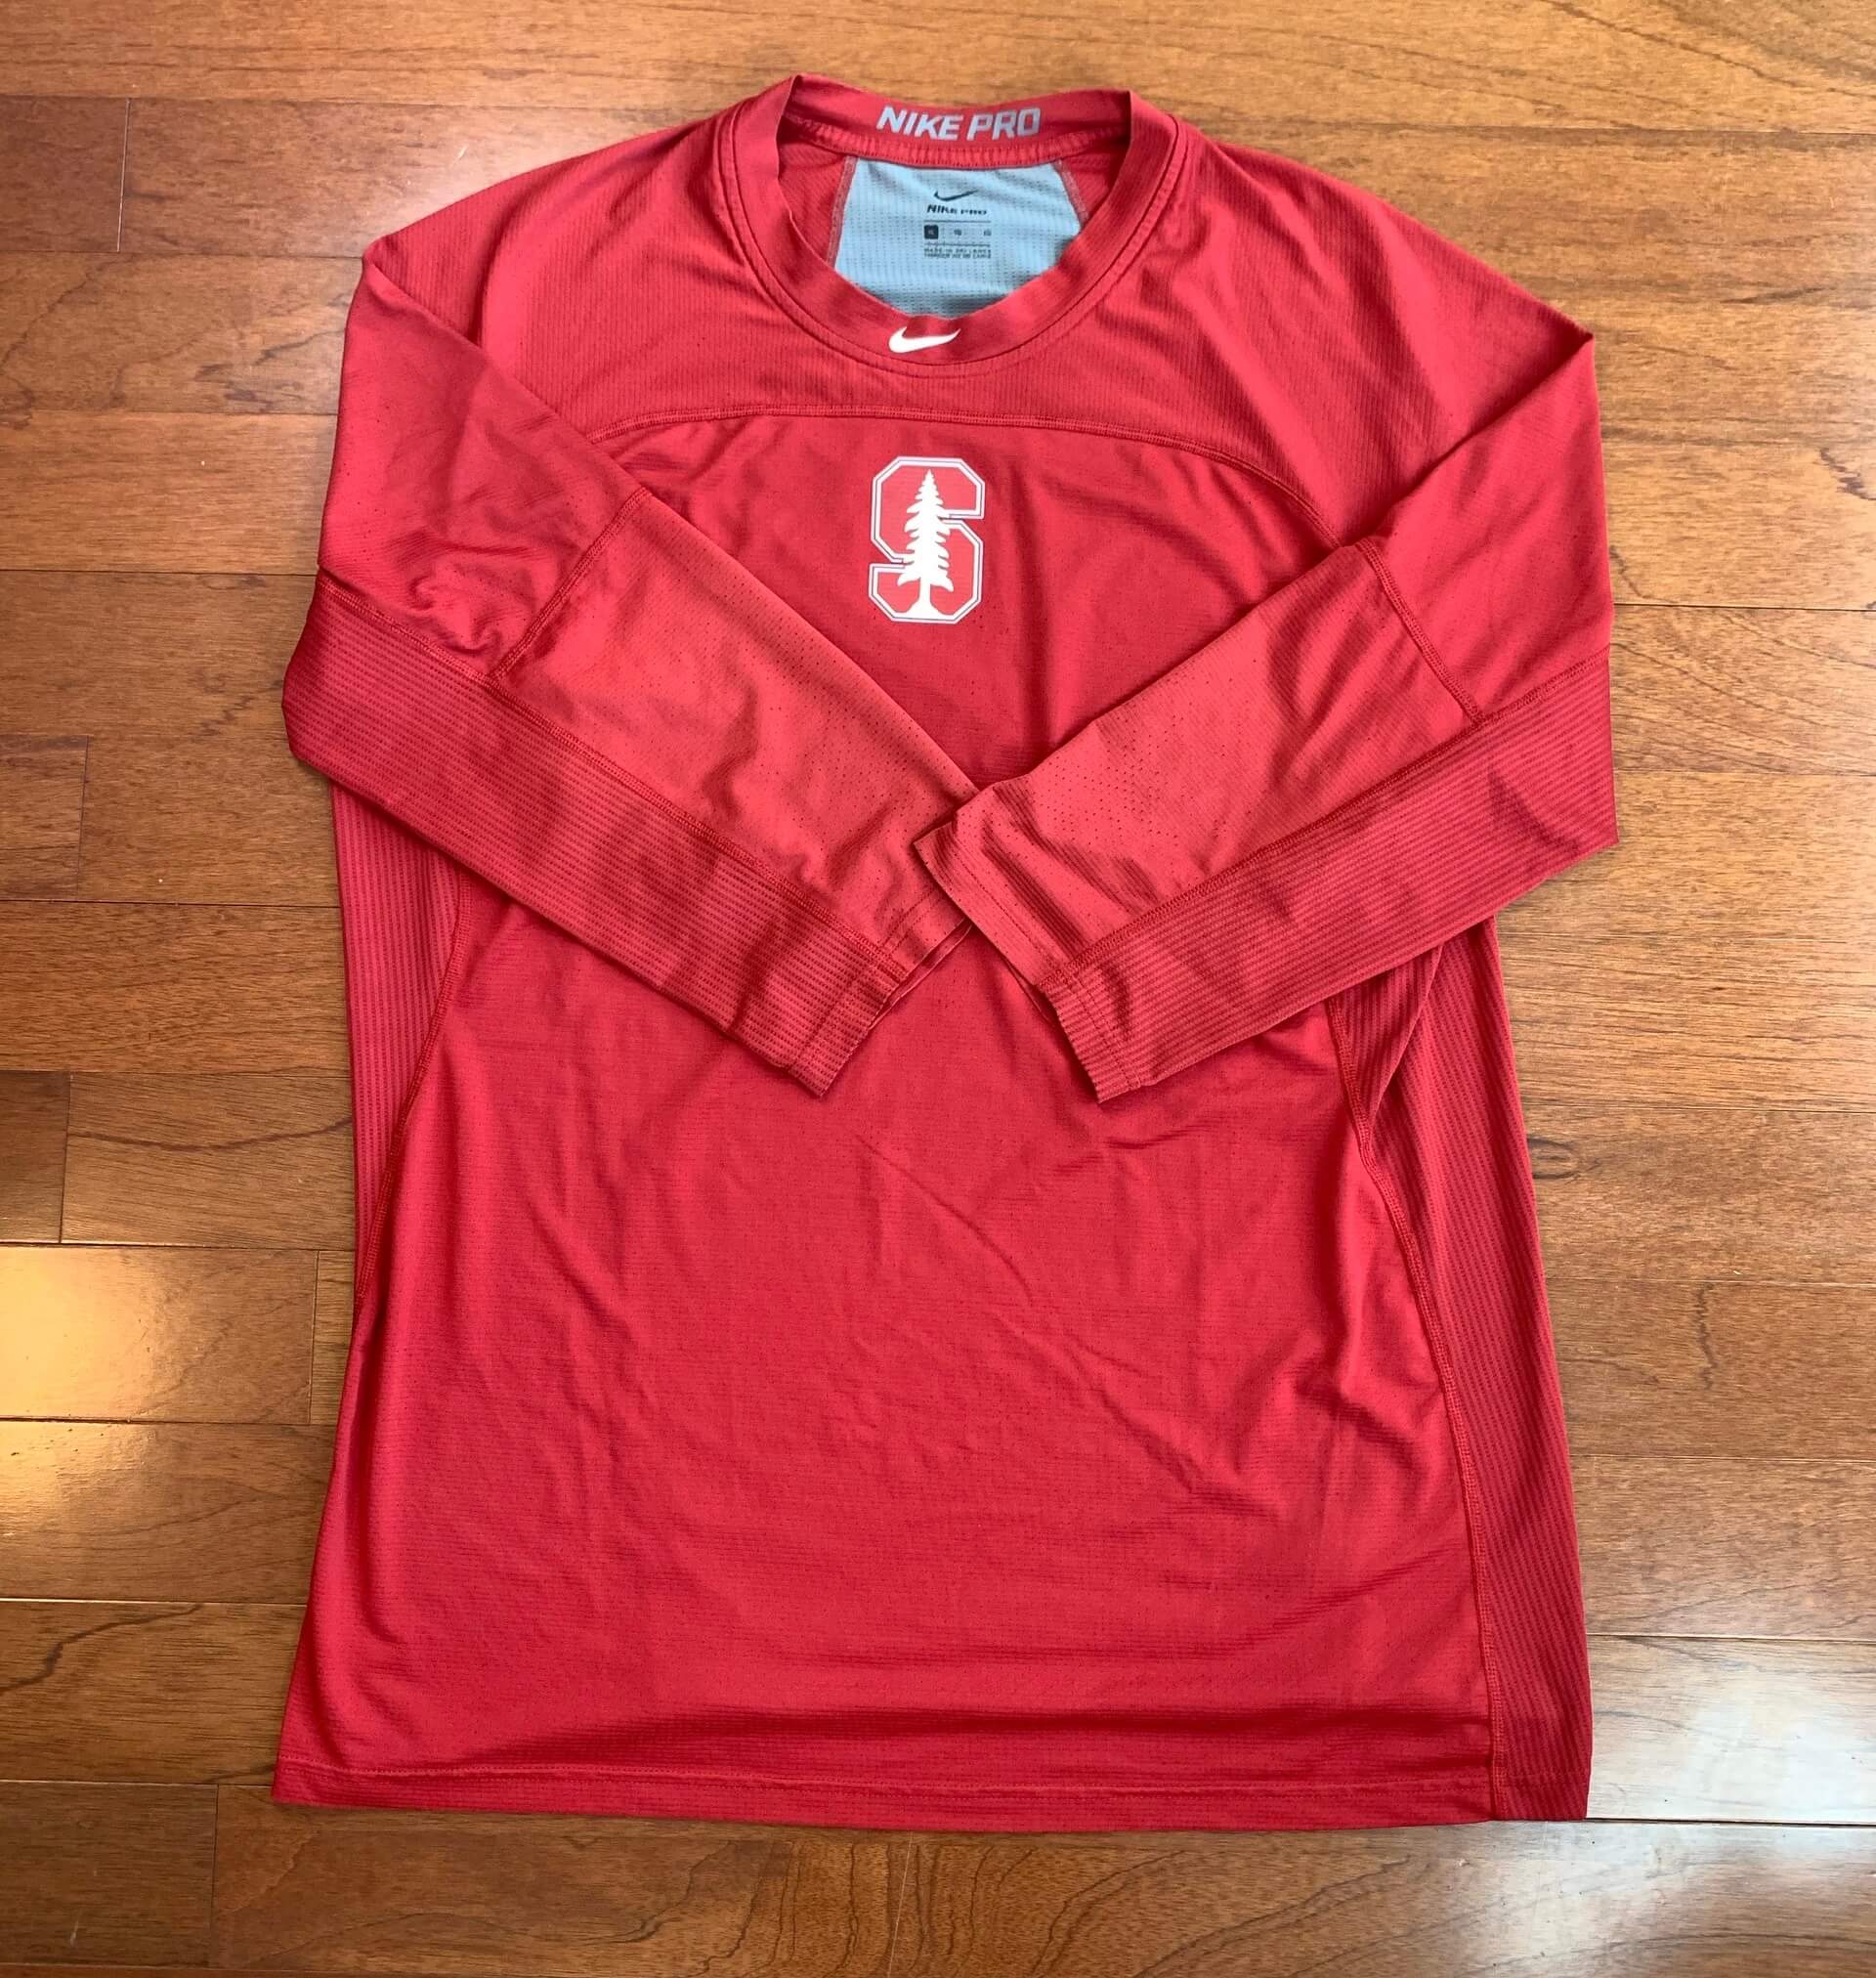 Stanford Baseball Nike Pro 3/4 Sleeve NARP Clothing